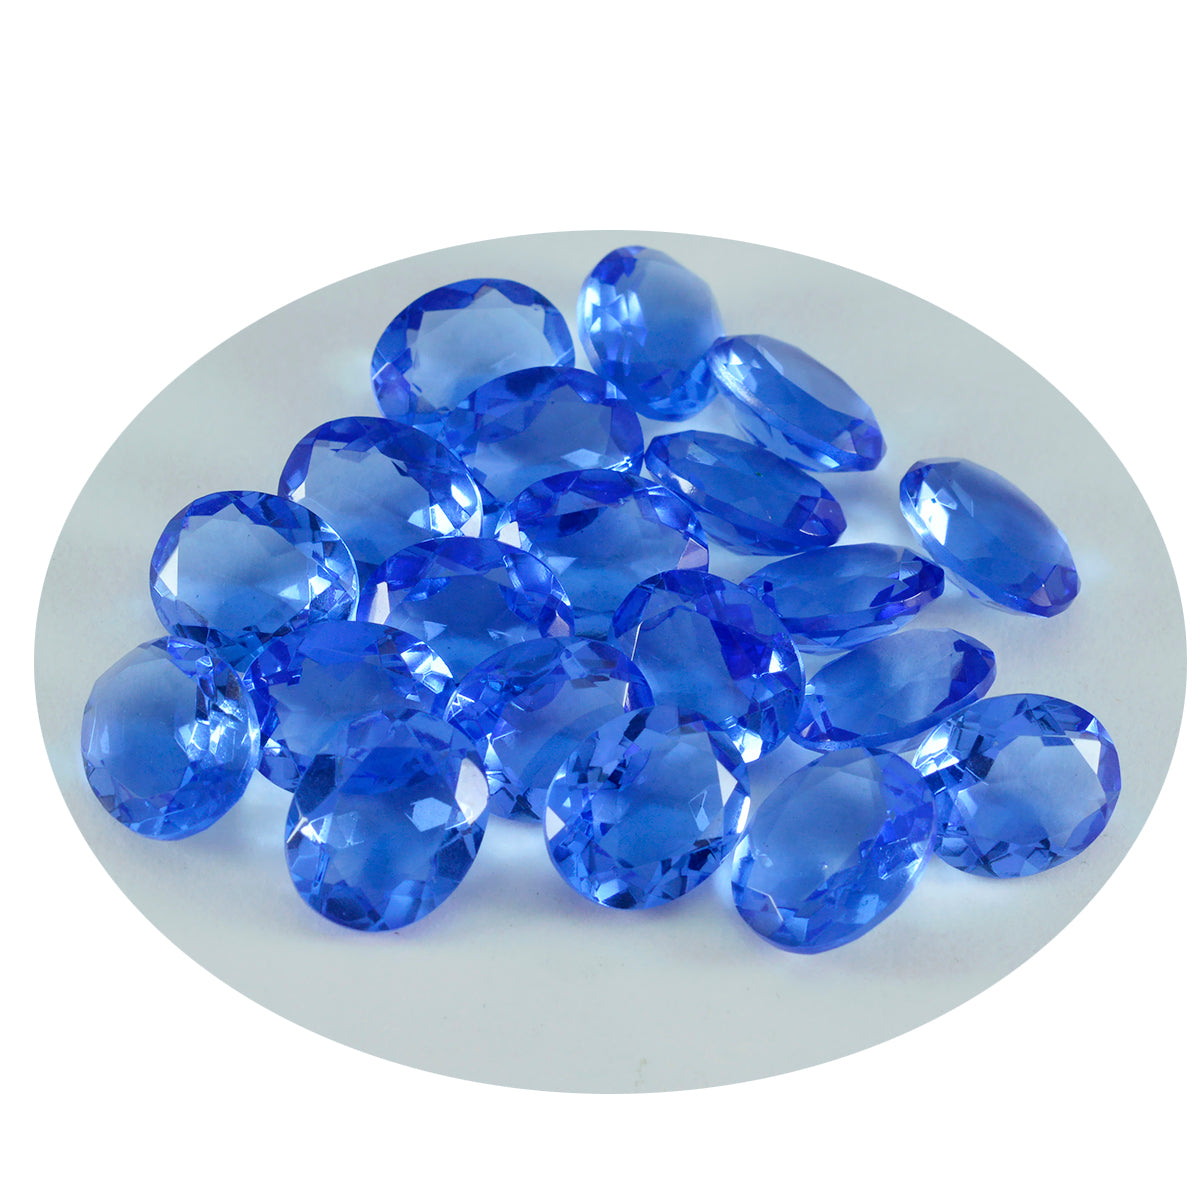 Riyogems 1 pieza de zafiro azul CZ facetado 7x9 mm forma ovalada gemas de calidad A1